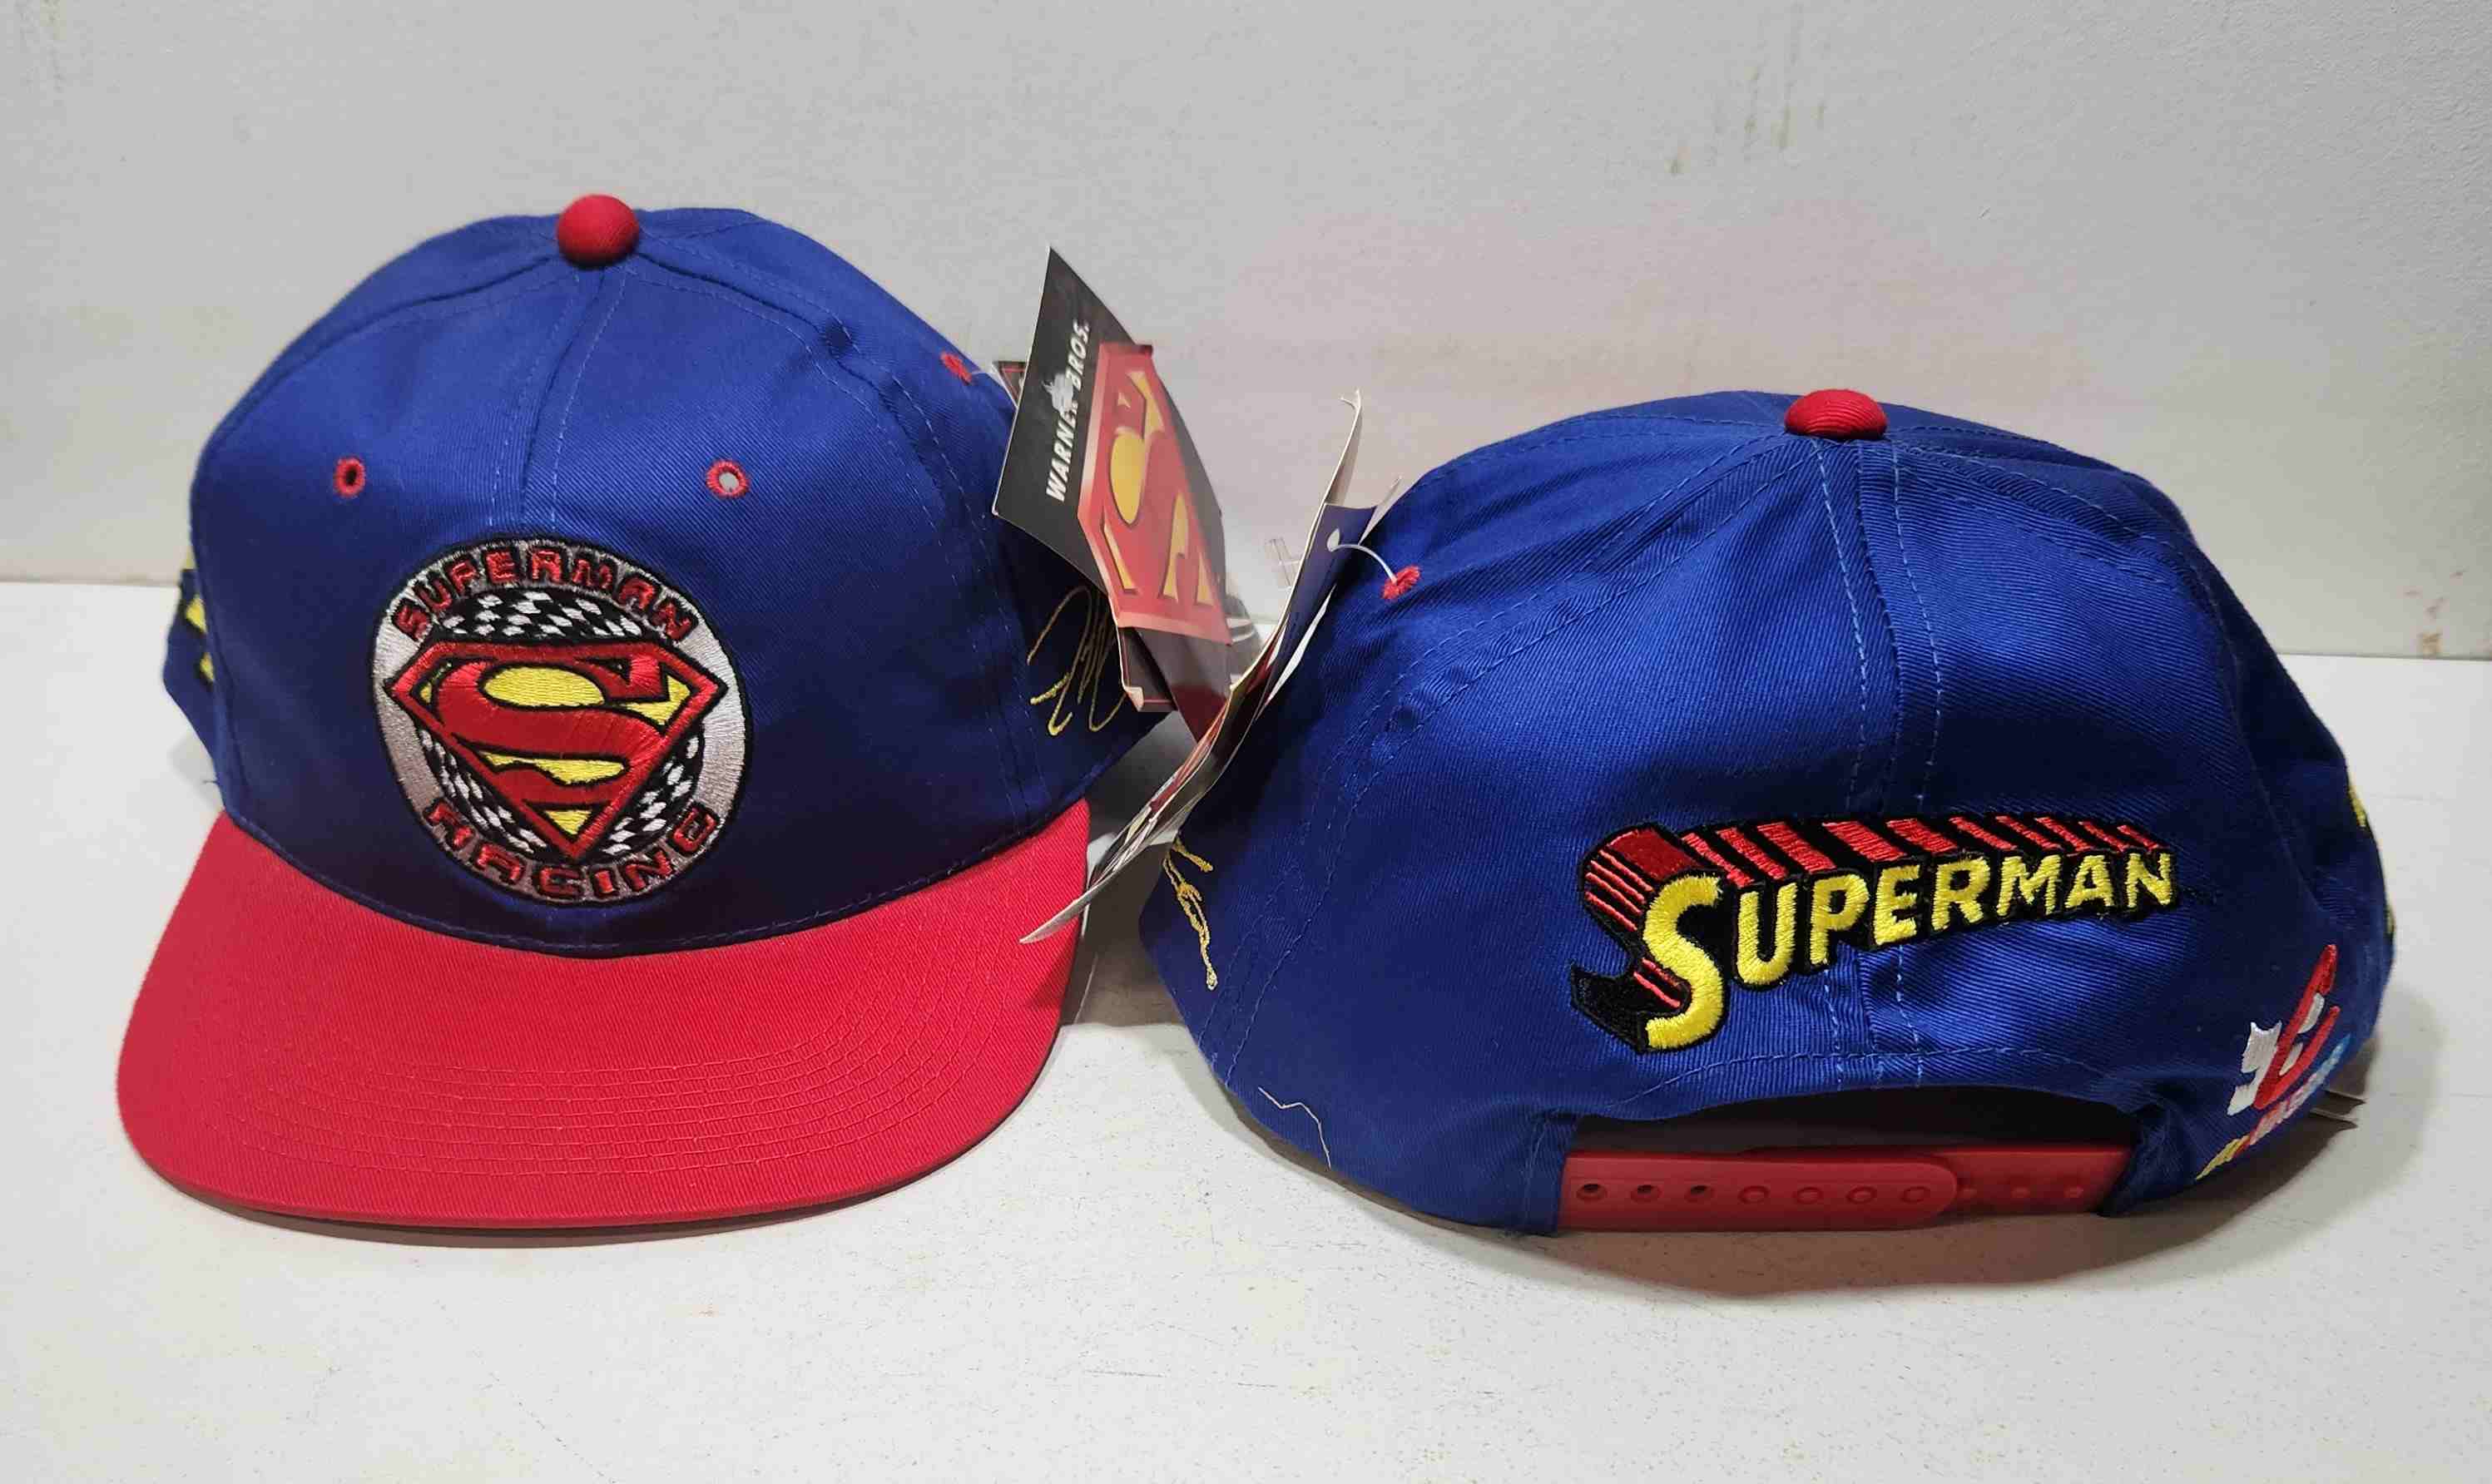 1999 Jeff Gordon Dupont "Superman Racing" cap